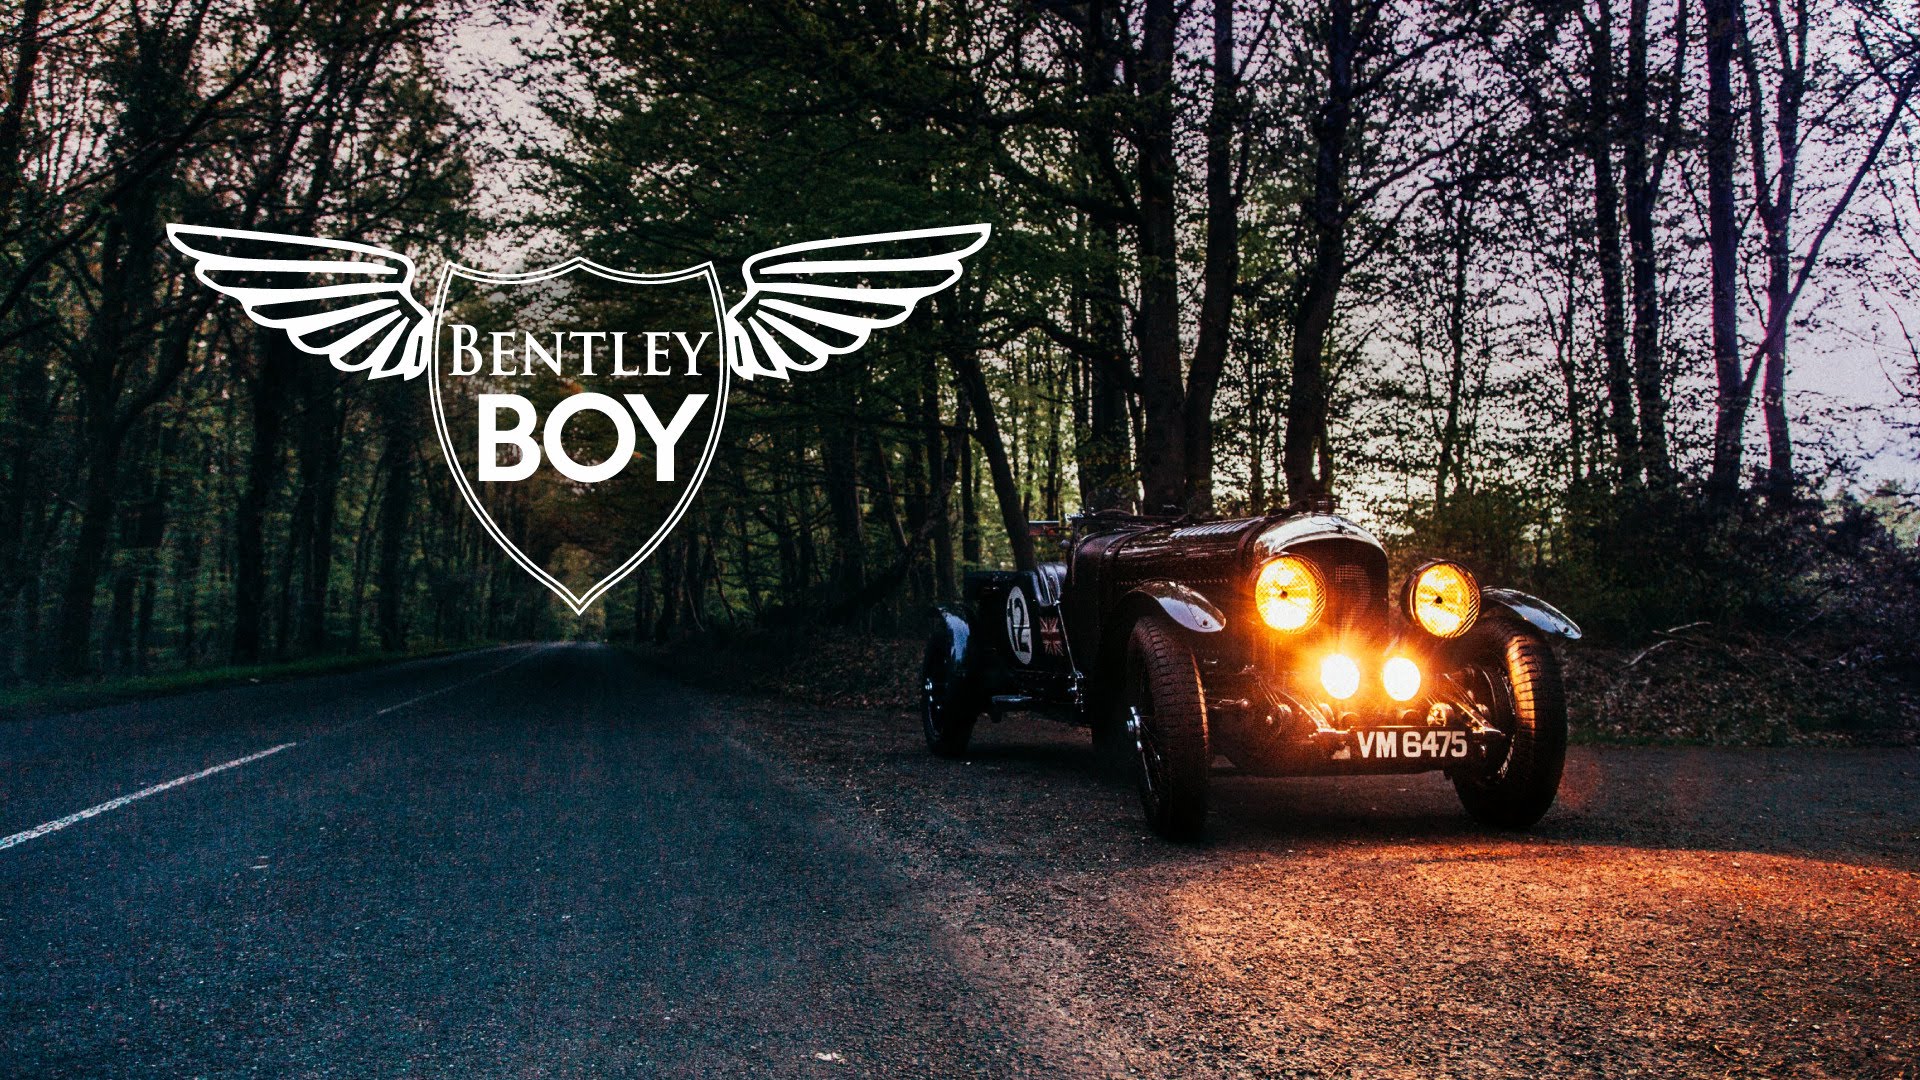 Live Life As A Bentley Boy